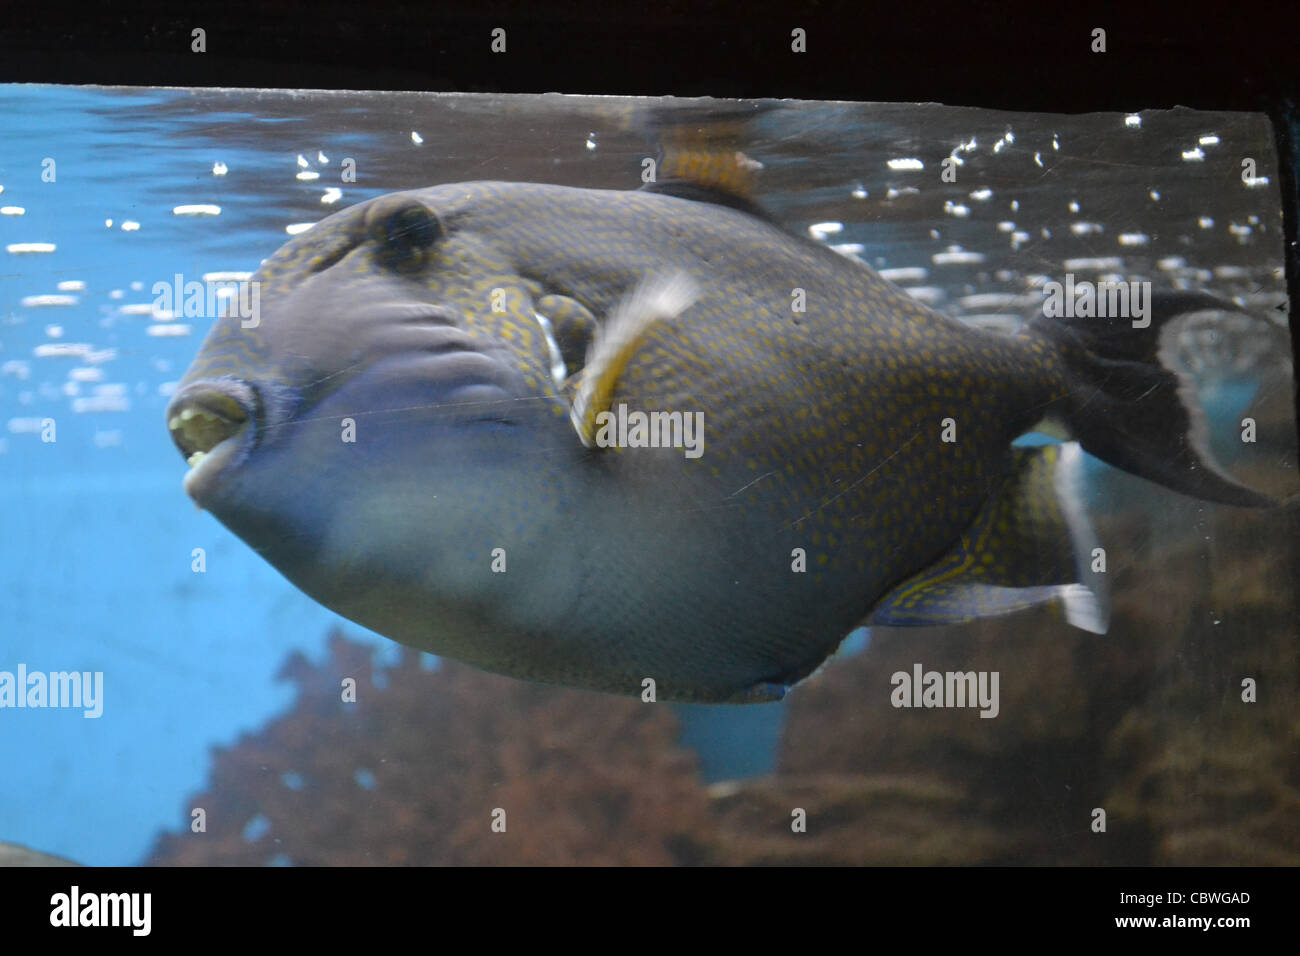 fish in an aquarium Stock Photo